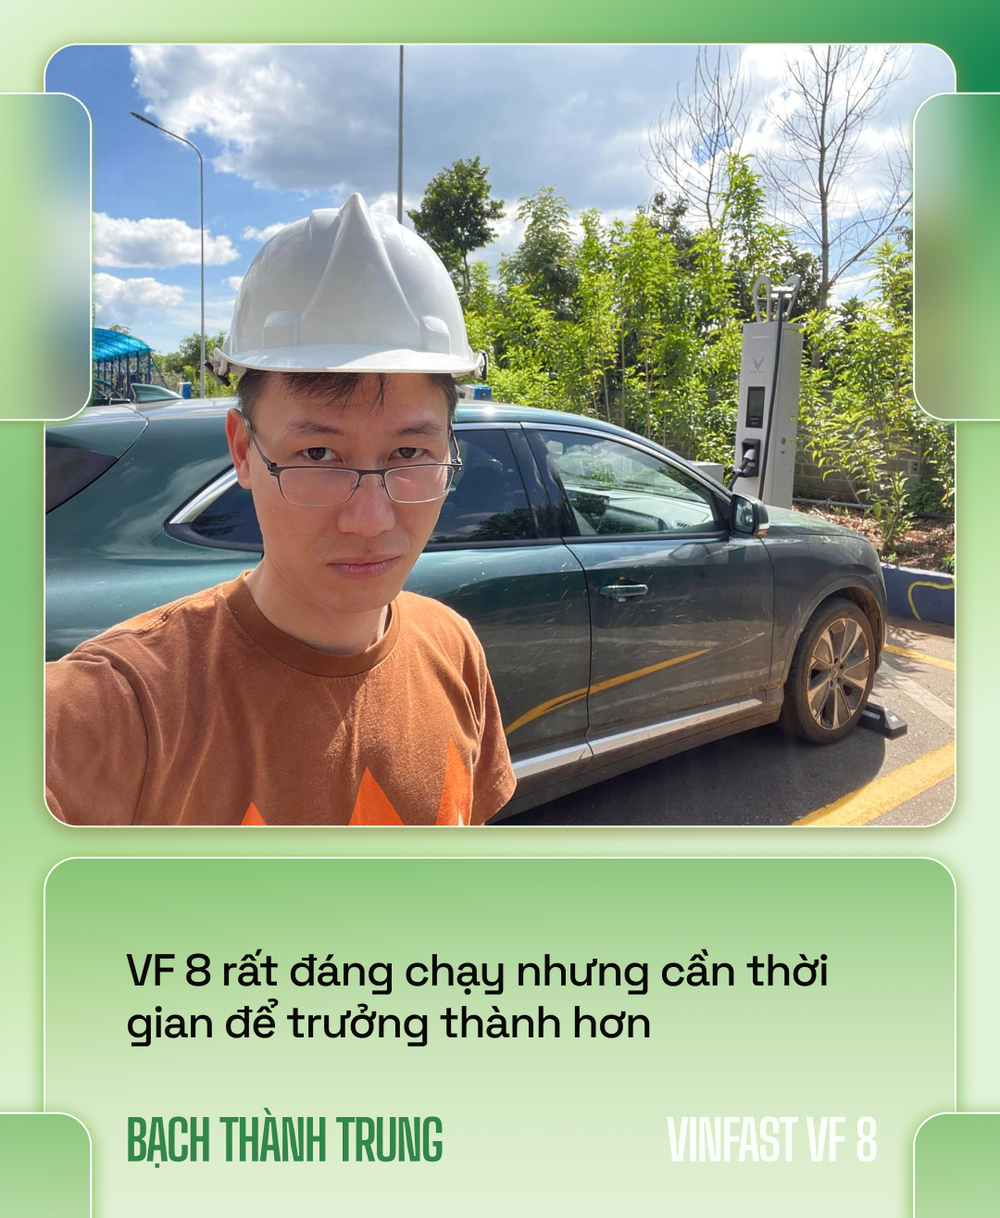 Nhà sáng lập VOZ lái VinFast VF 8 xuyên Việt hơn 6.600km: Đổ đèo nhàn hơn xe xăng, nhưng vẫn cần hoàn thiện hơn - Ảnh 1.